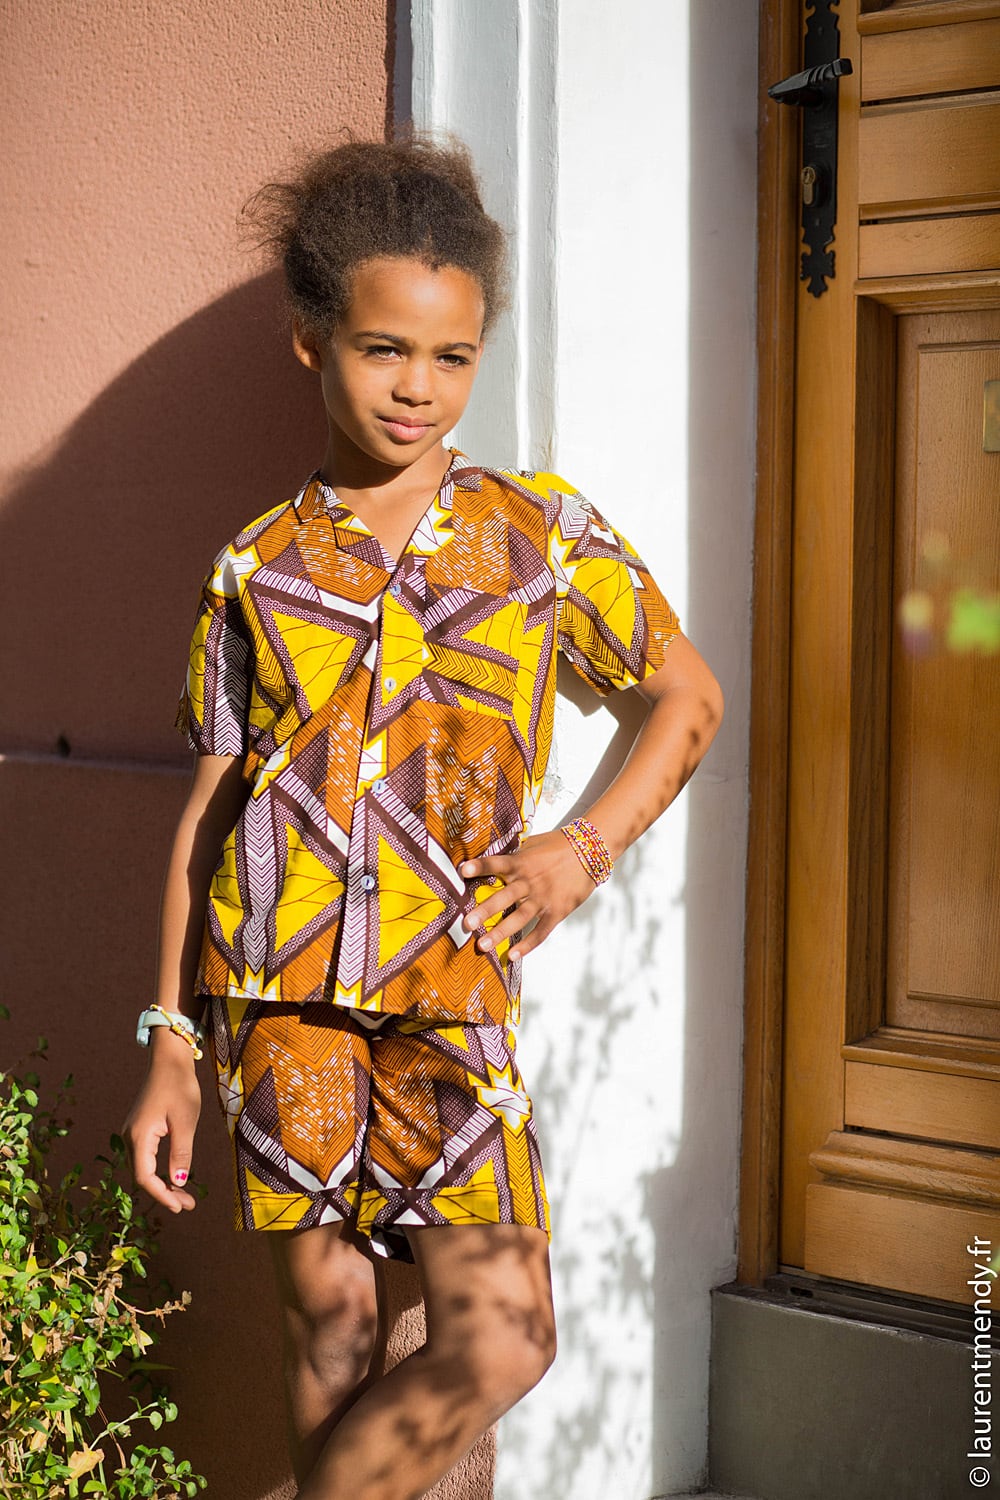 Bardot Top/ Top imprimé africain/ Akuma Vêtements Vêtements enfant unisexe Hauts et t-shirts Chemises boutonnées 